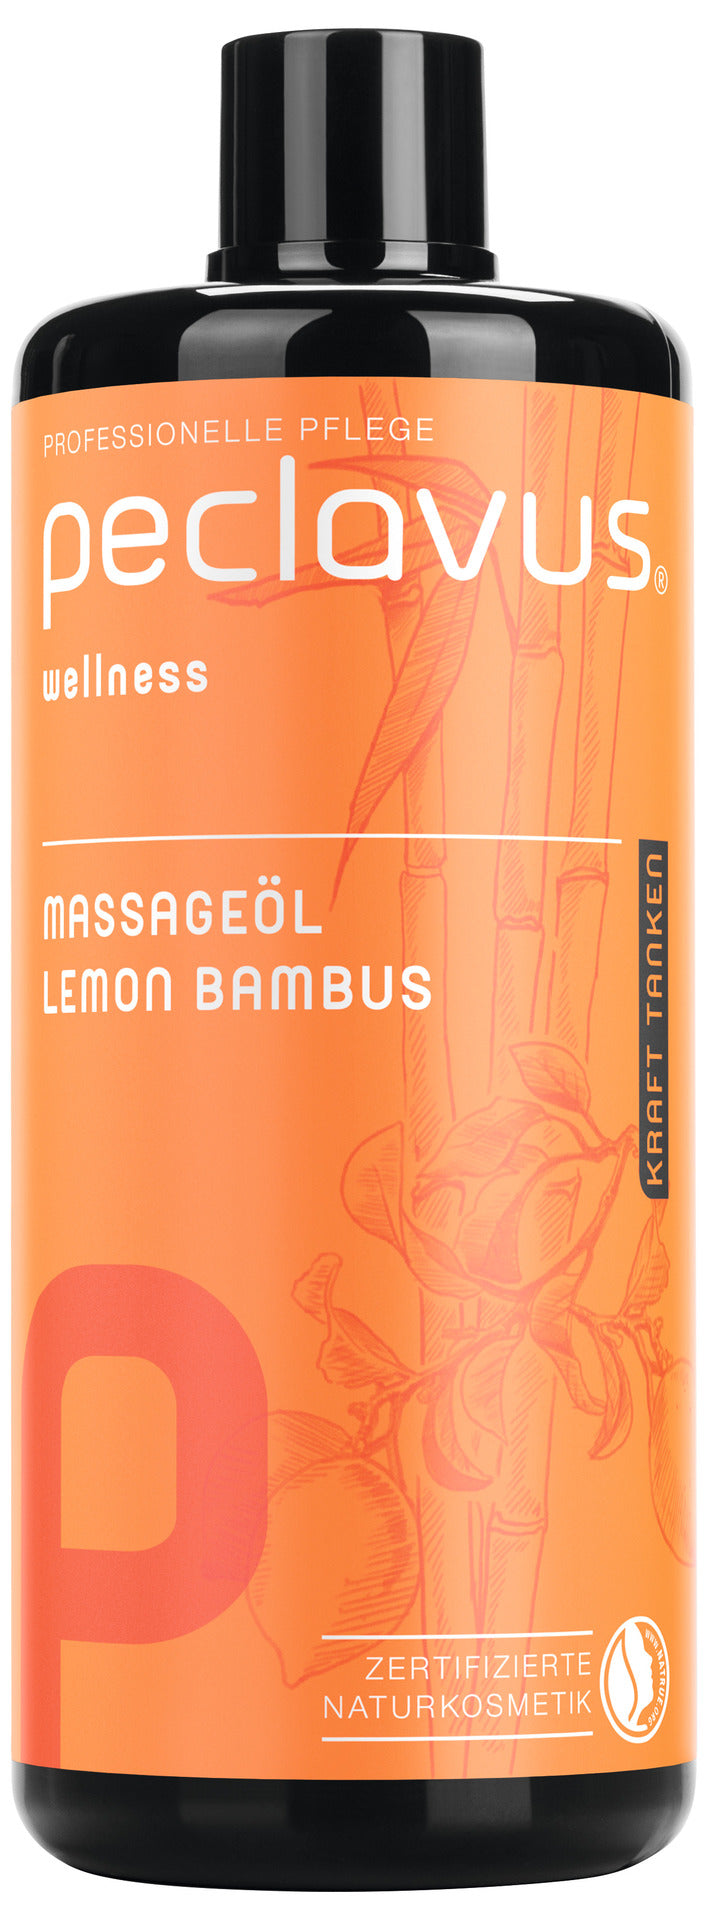 Huile de massage - Citron Bambou - 500 ml - Peclavus